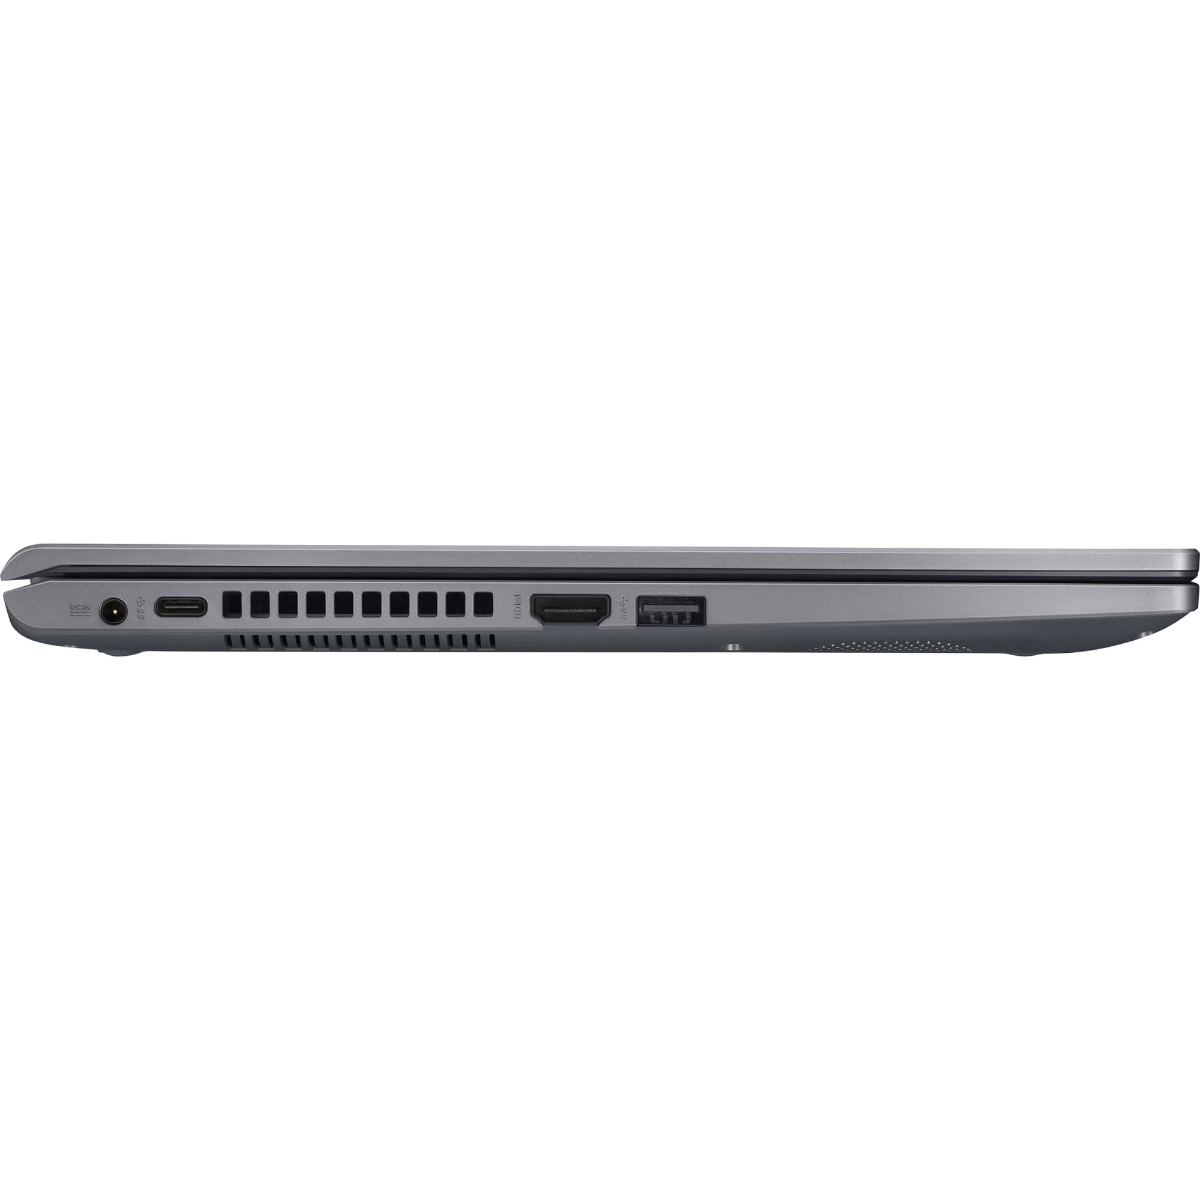 Laptop Asus X509JB-EJ005, 15.6, Intel Core i5-1035G1, Full HD, 8GB, SSD 512GB, NVIDIA GeForce MX110 2GB, Free DOS, Slate Gray